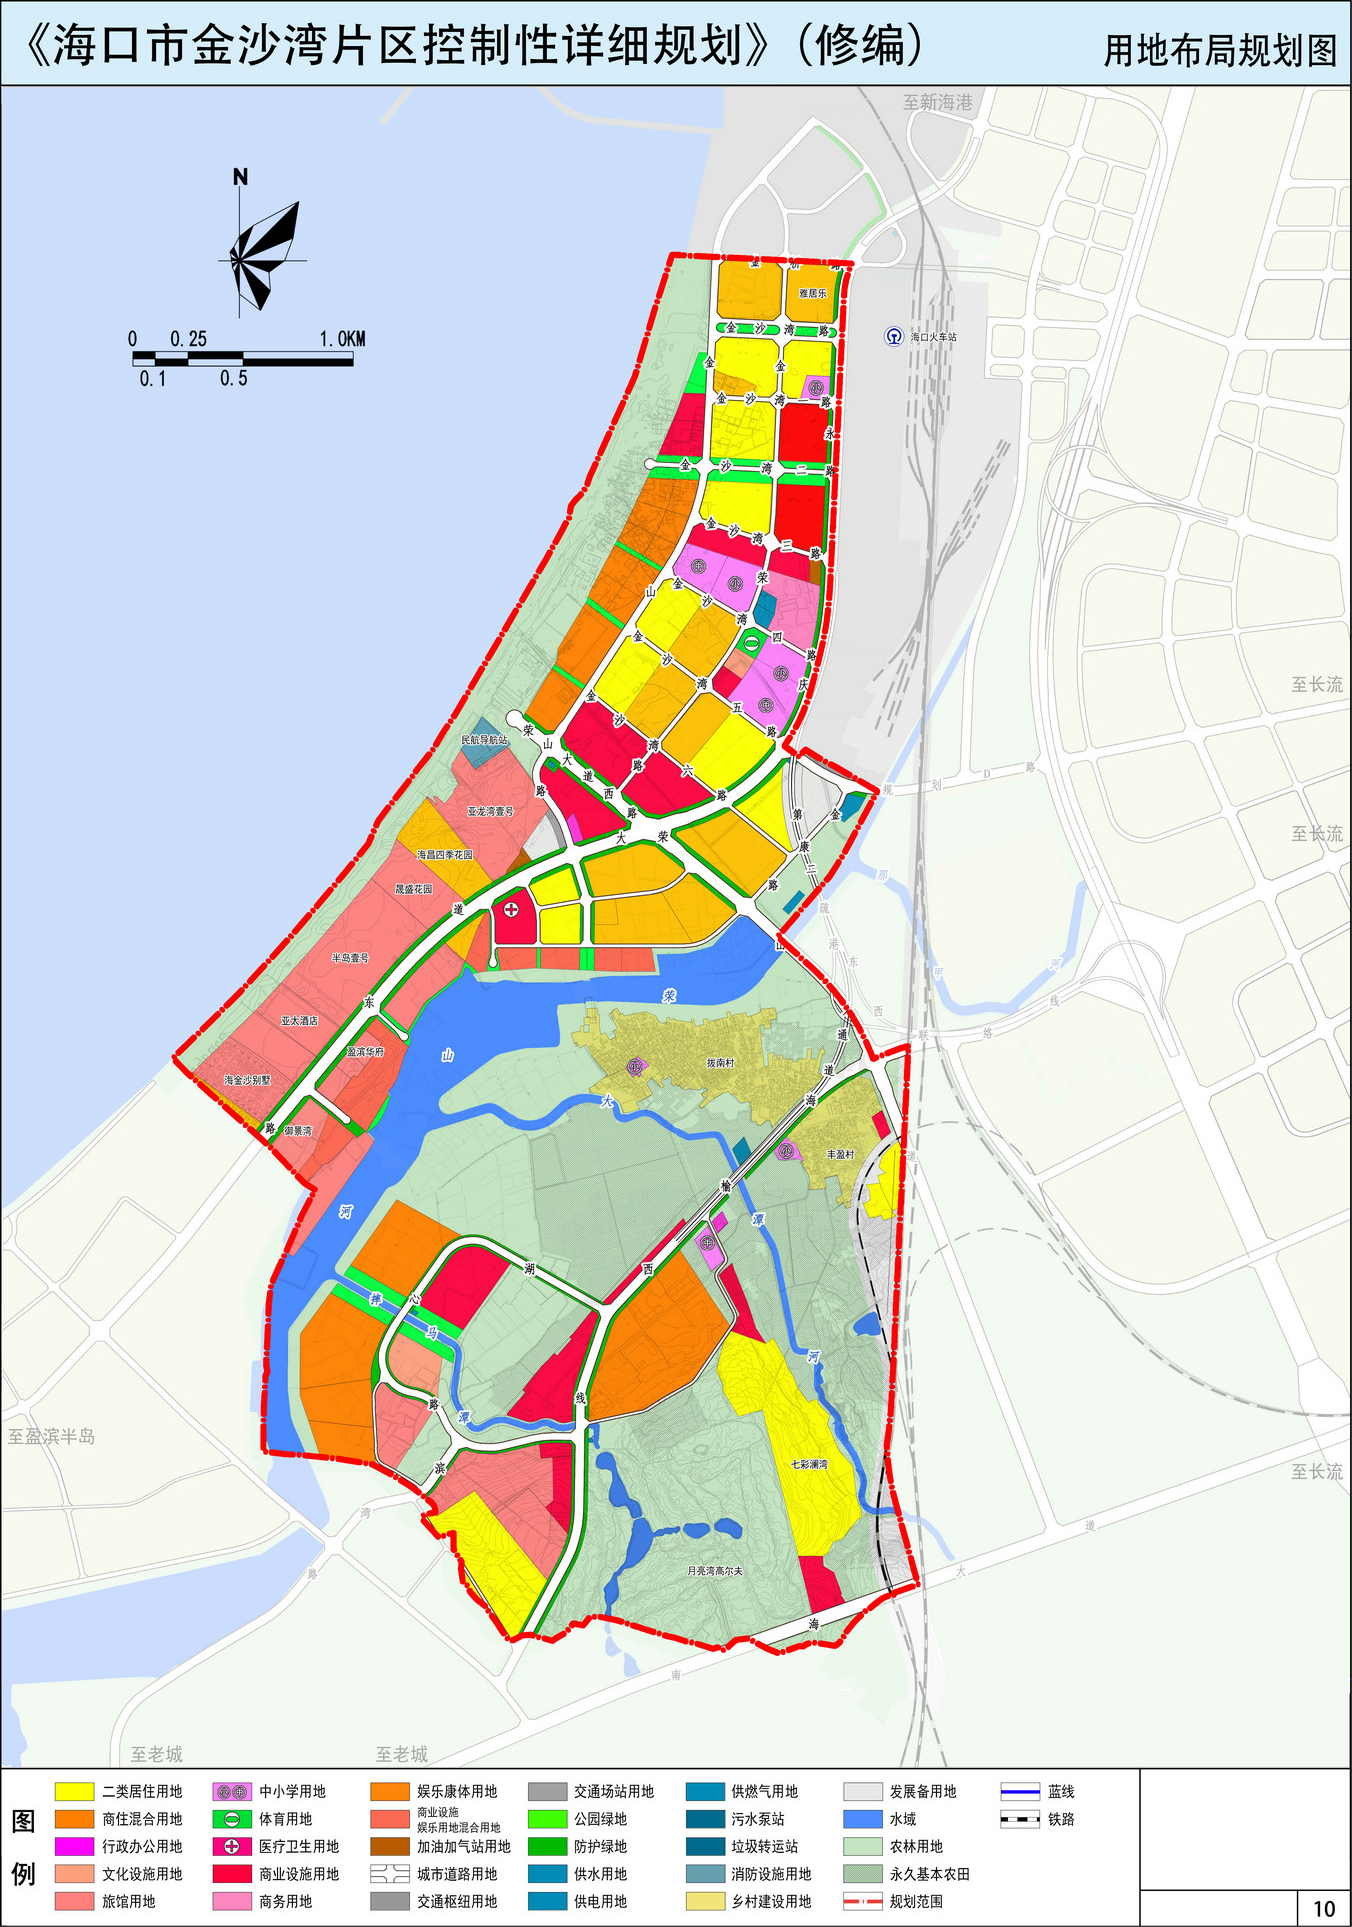 海口新海港临港片区,澄迈盈滨半岛片区之间,发展潜力大,规划范围东起